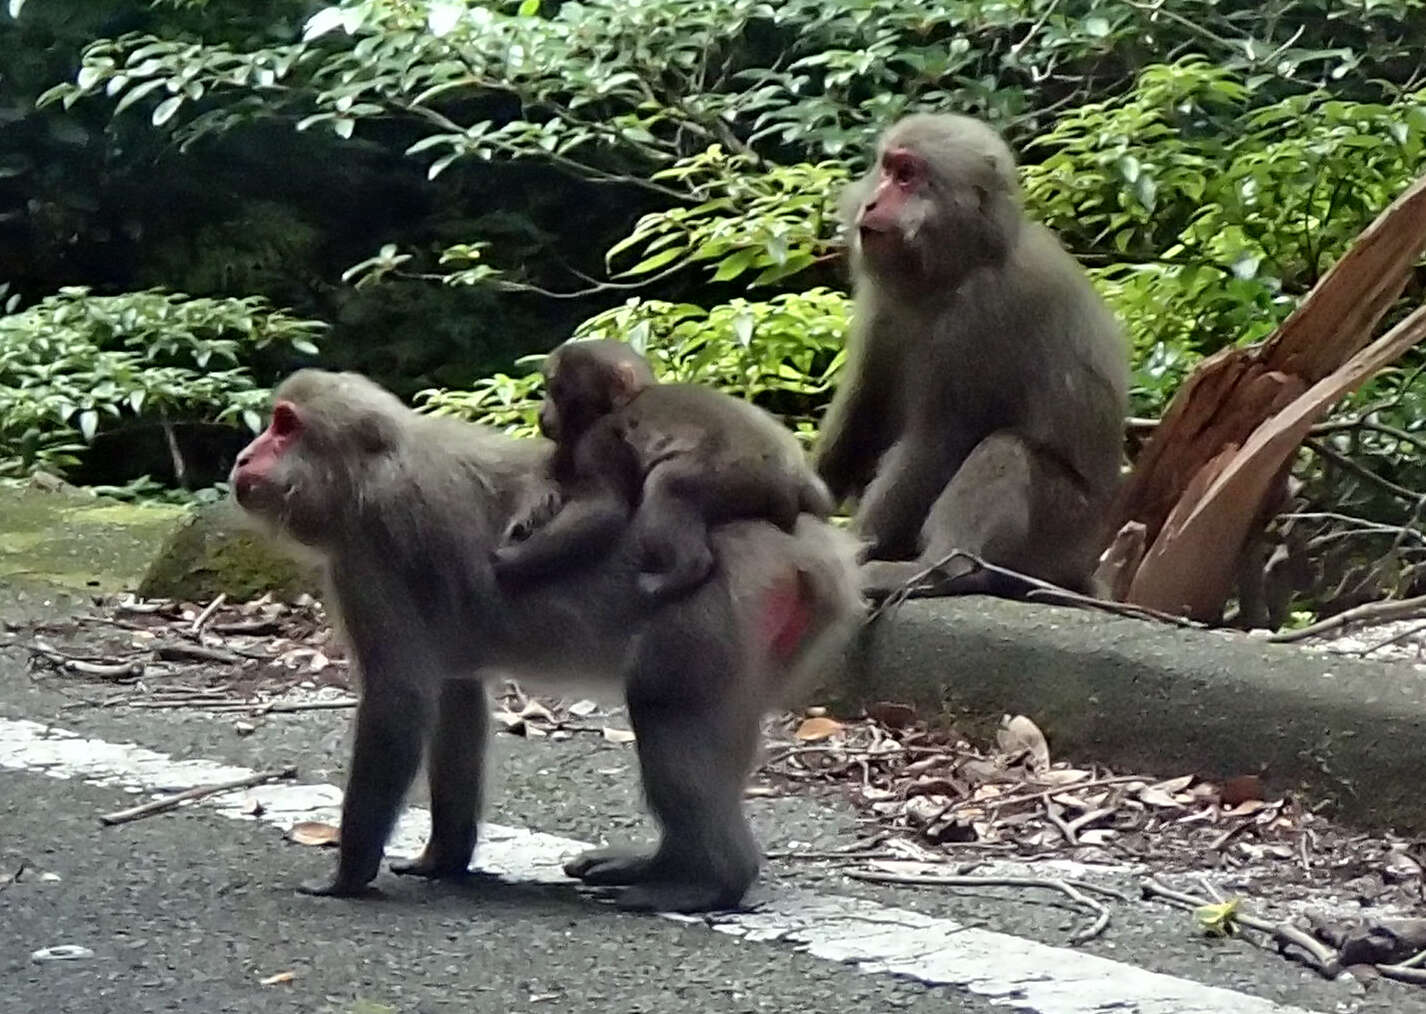 Image of Yakushima Macaque